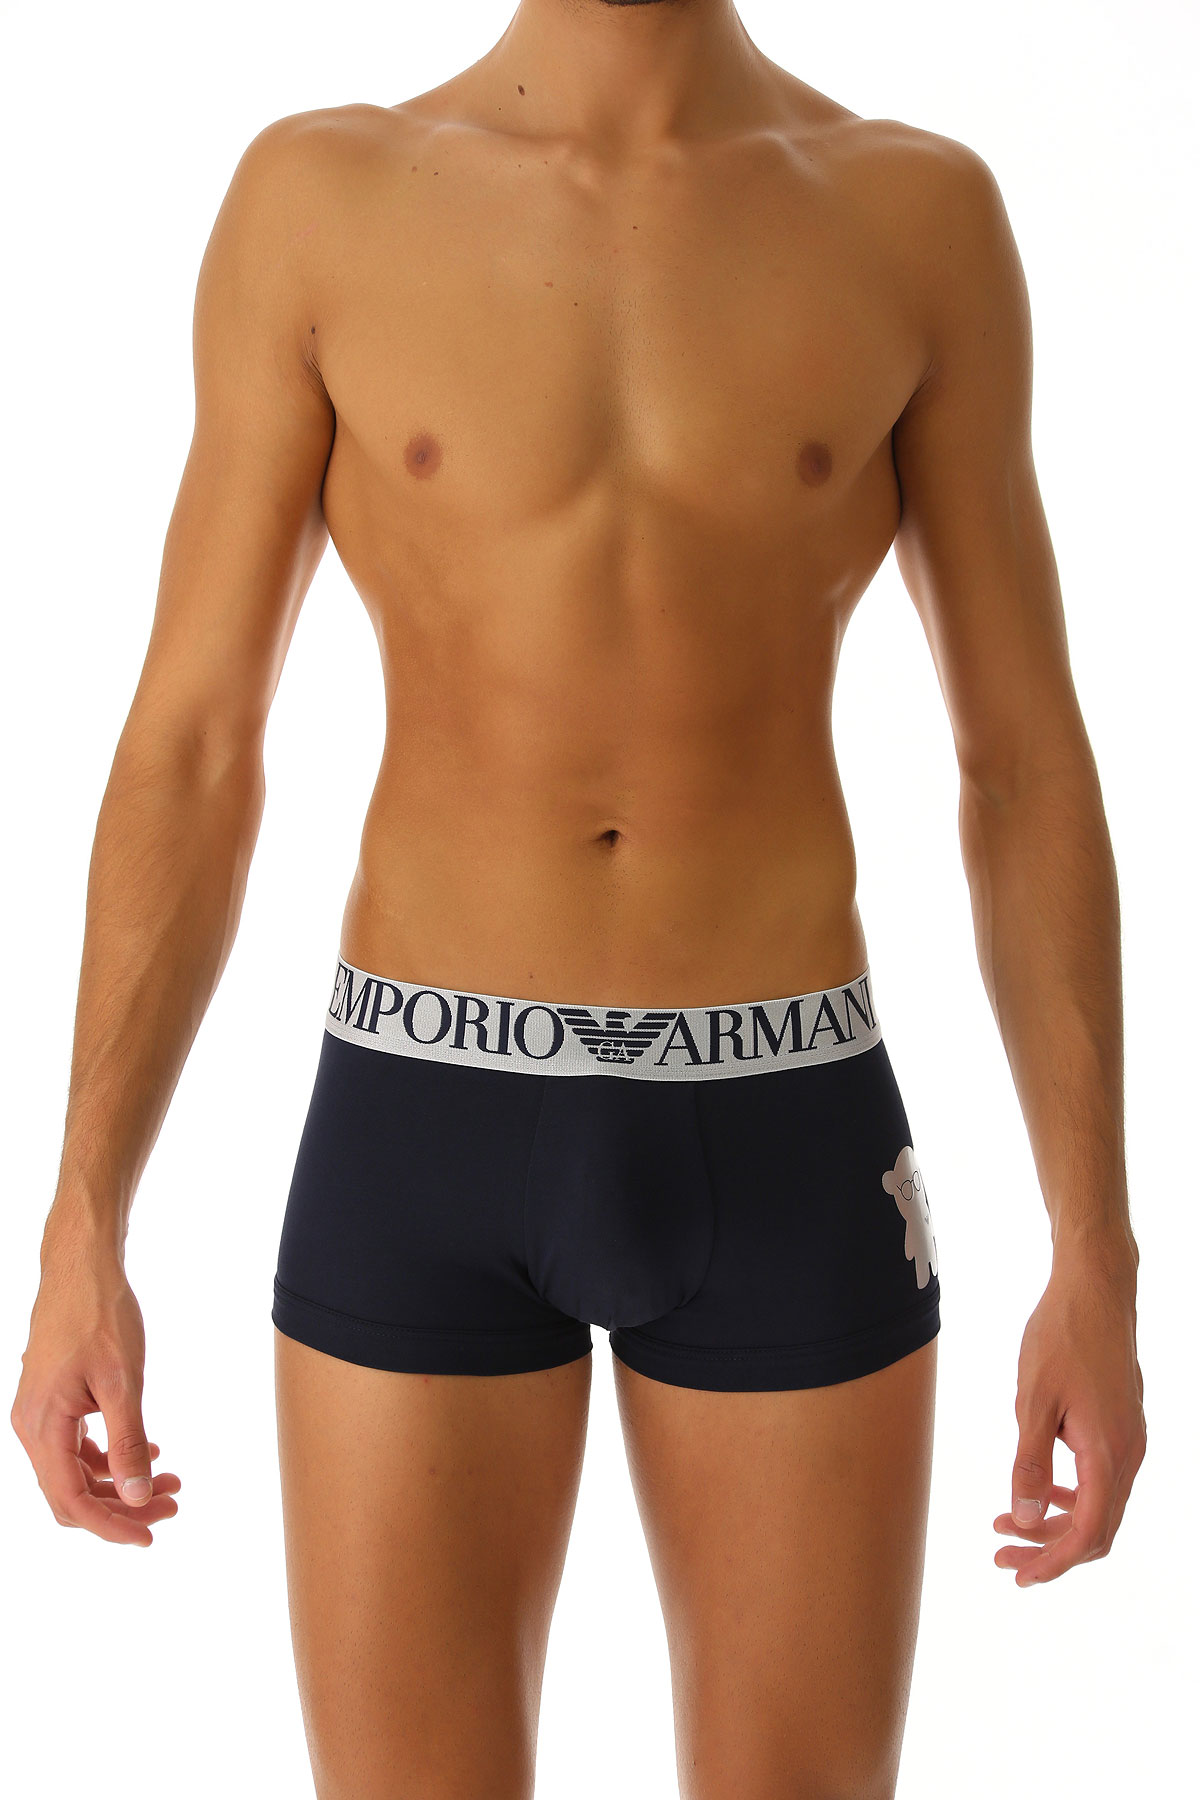 Emporio Armani Boxer Shorts für Herren, Unterhose, Short, Boxer Günstig im Sale, Marineblau, Baumwolle, 2017, L M